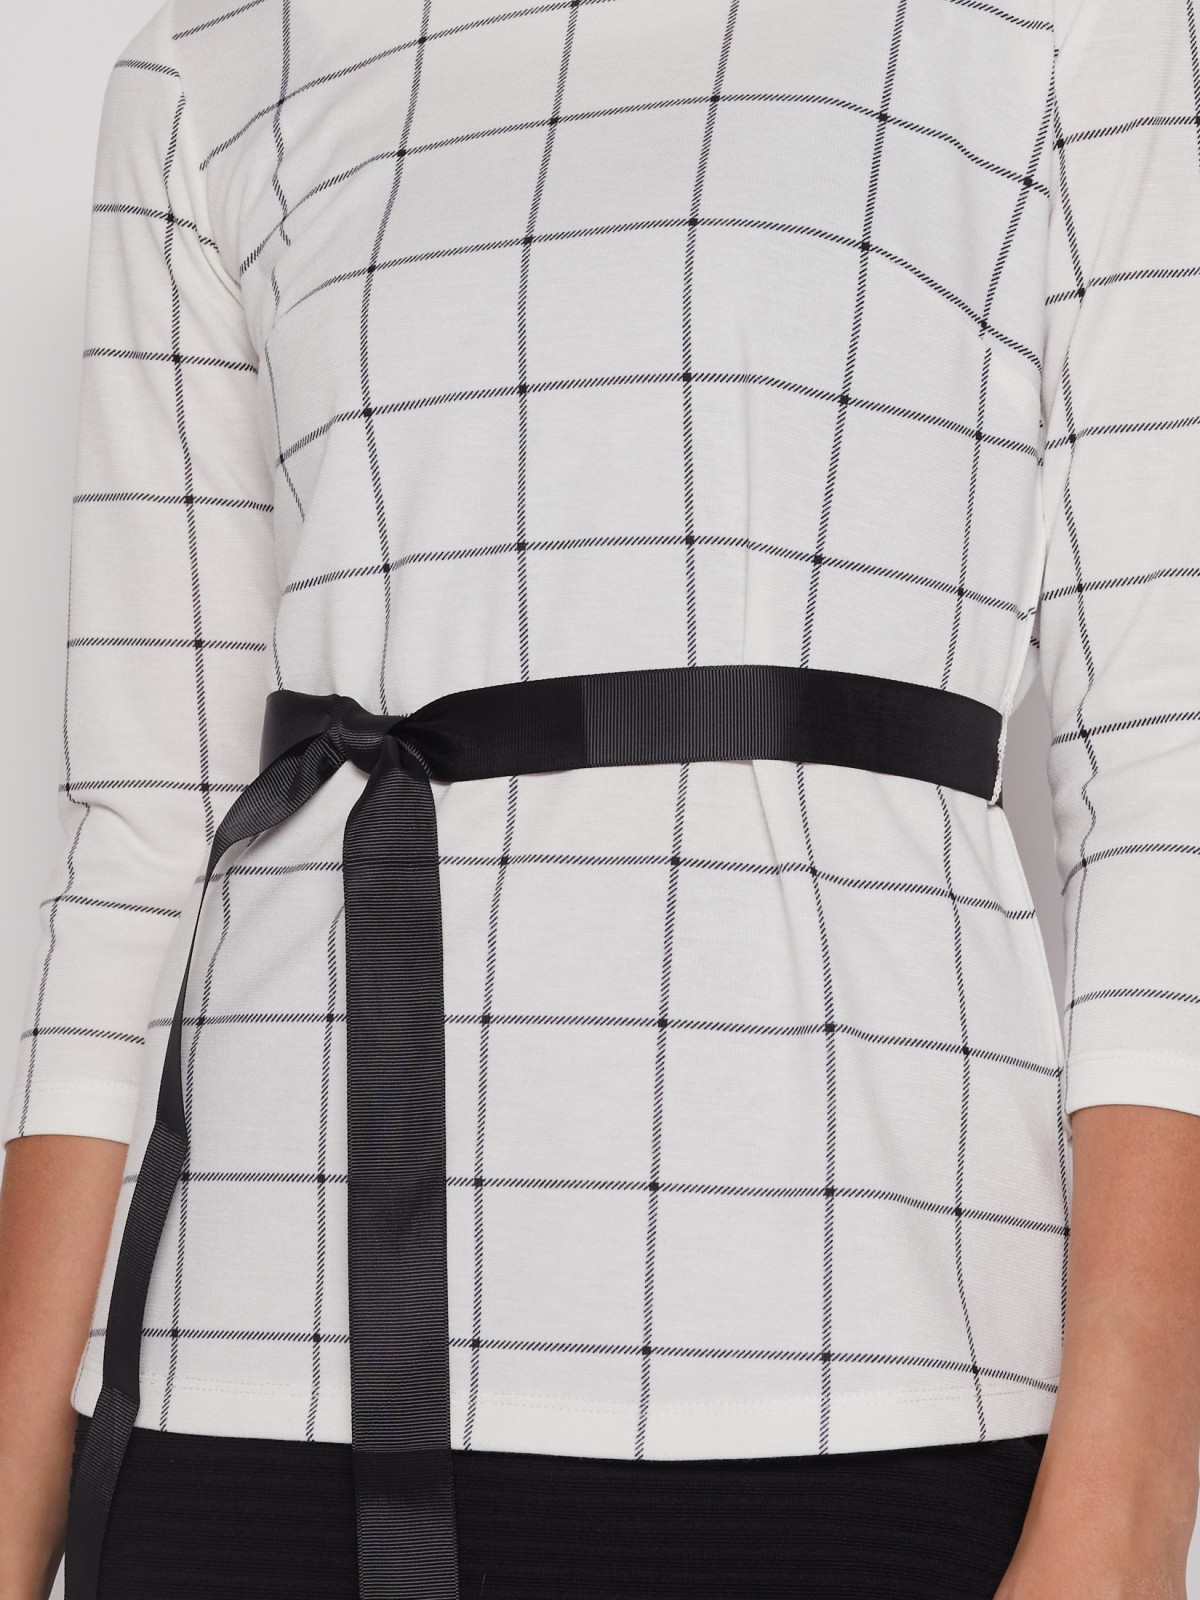 Трикотажная блузка с поясом zolla 022113110023, цвет белый, размер XS - фото 3